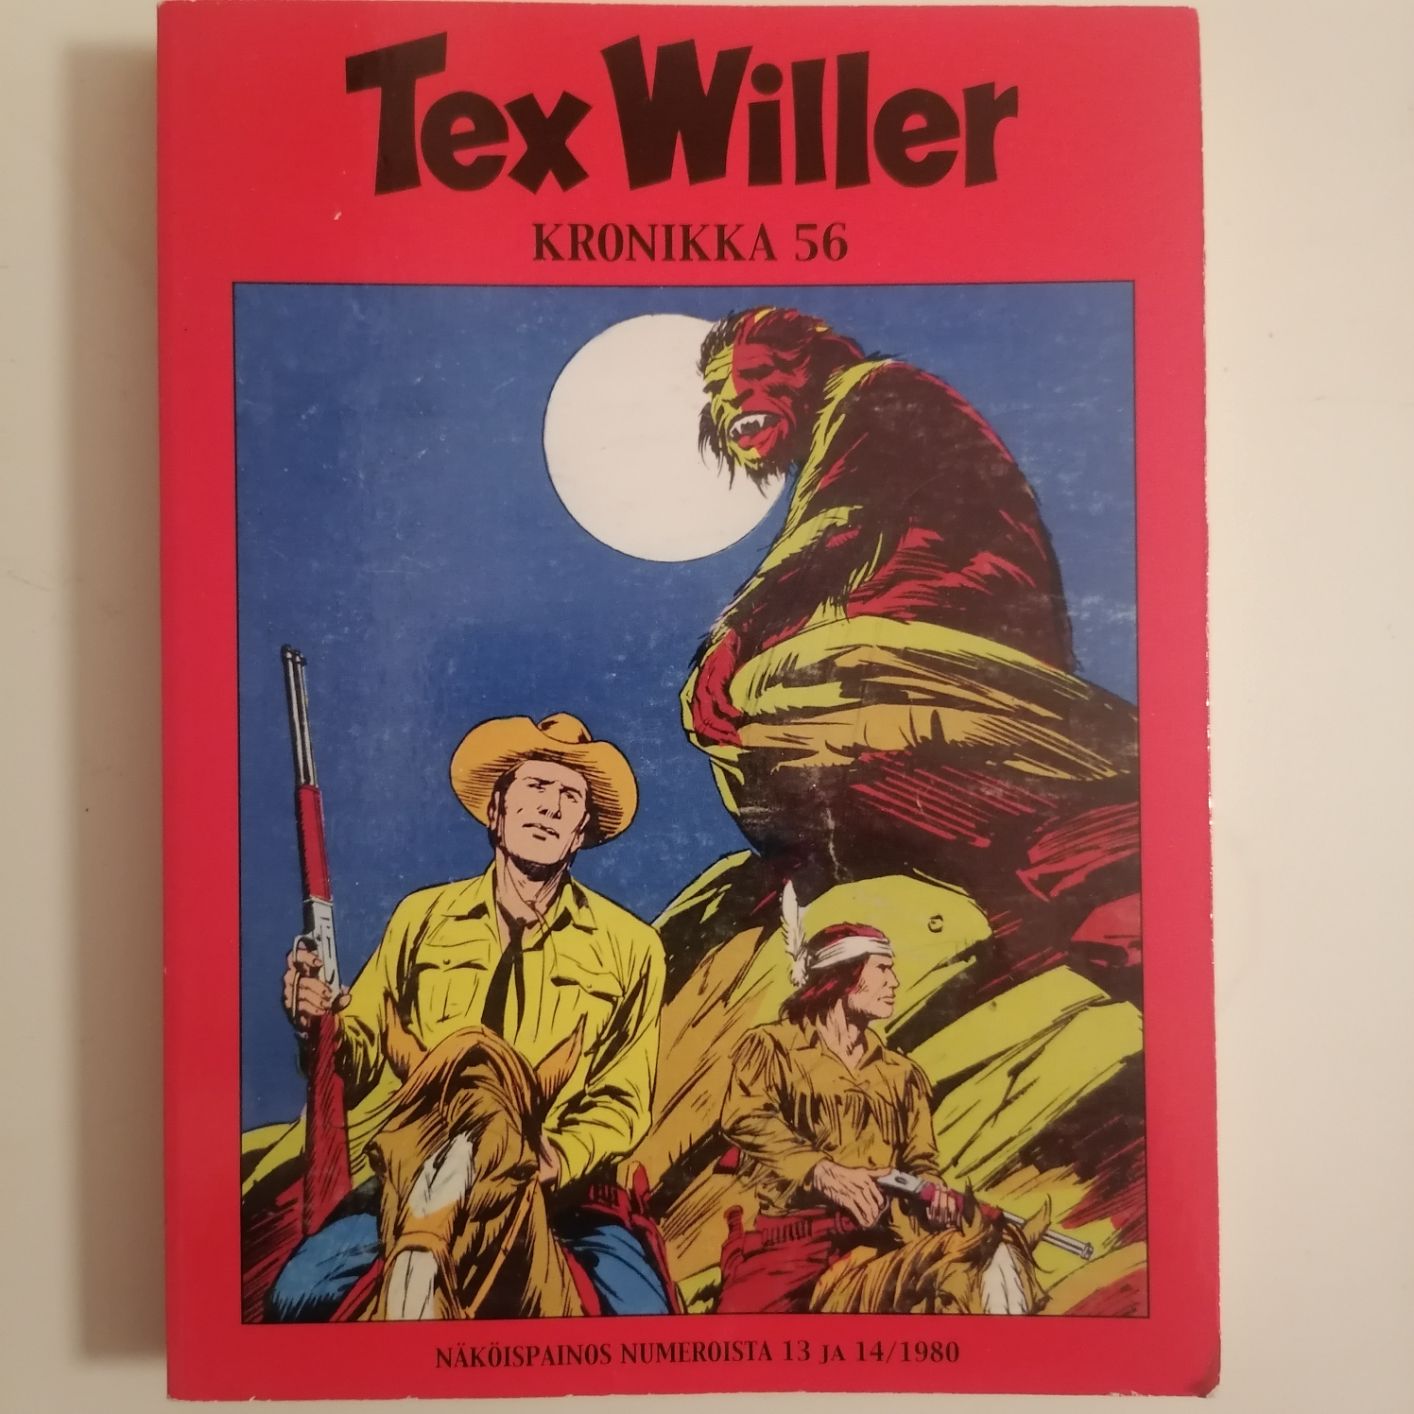 Tex Willer Kronikka 56 näköispainos 13 ja 14 / 1980 siistikuntoinen ja lukematon hinta 5,50 euroa.